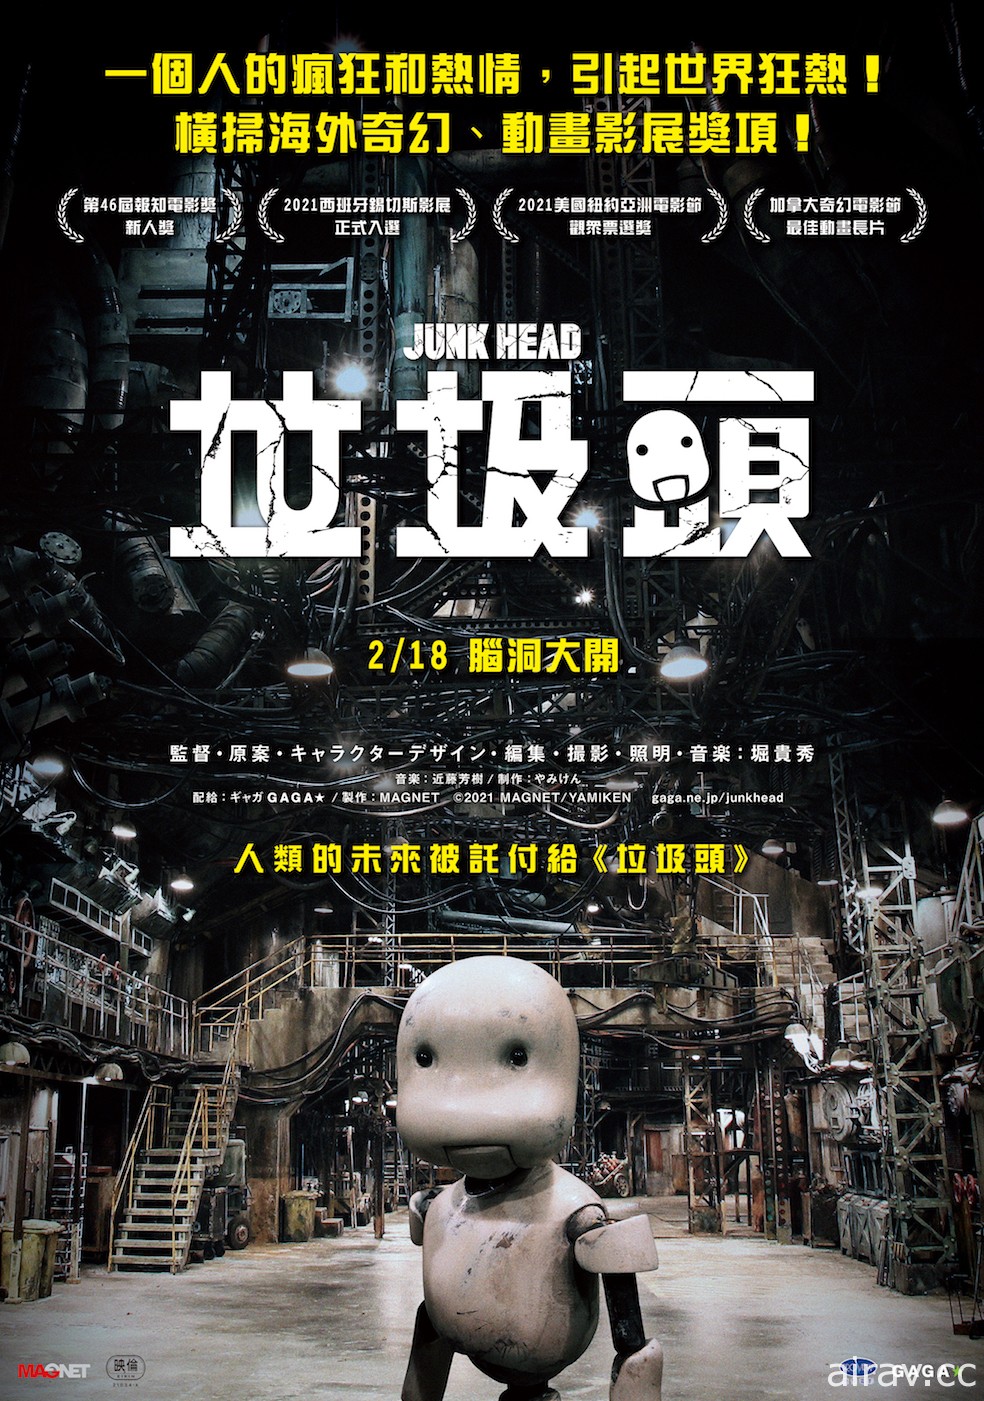 日本一人完成科幻逐格動畫電影《垃圾頭》將於 2 月 18 日在台上映